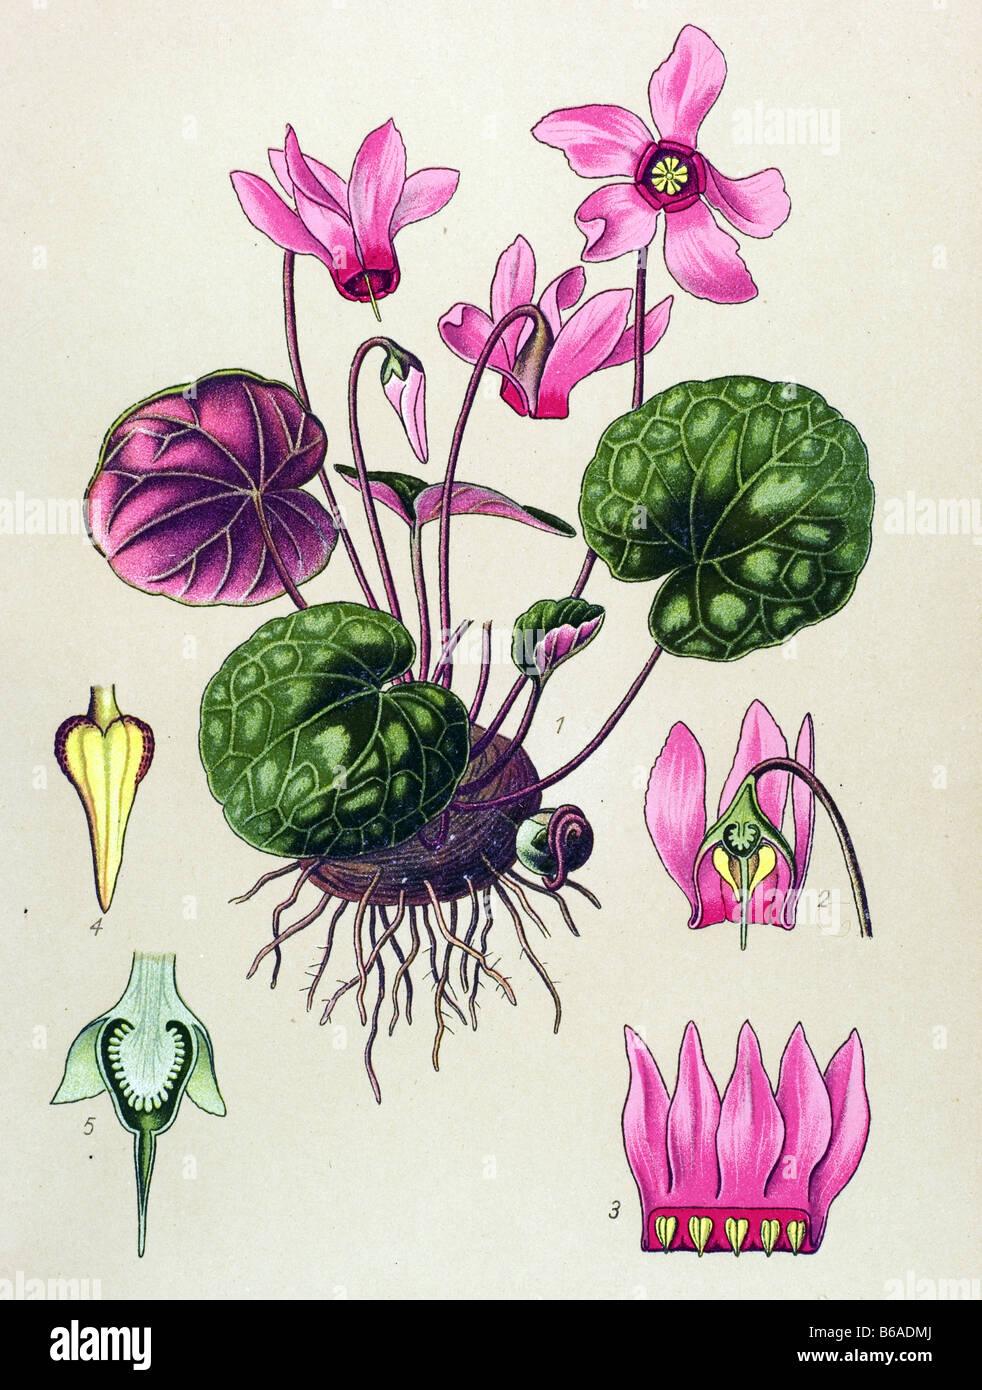 Sowbread, Cyclamen purpurascens, Cyclamen europaeum  poisonous plants illustrations Stock Photo